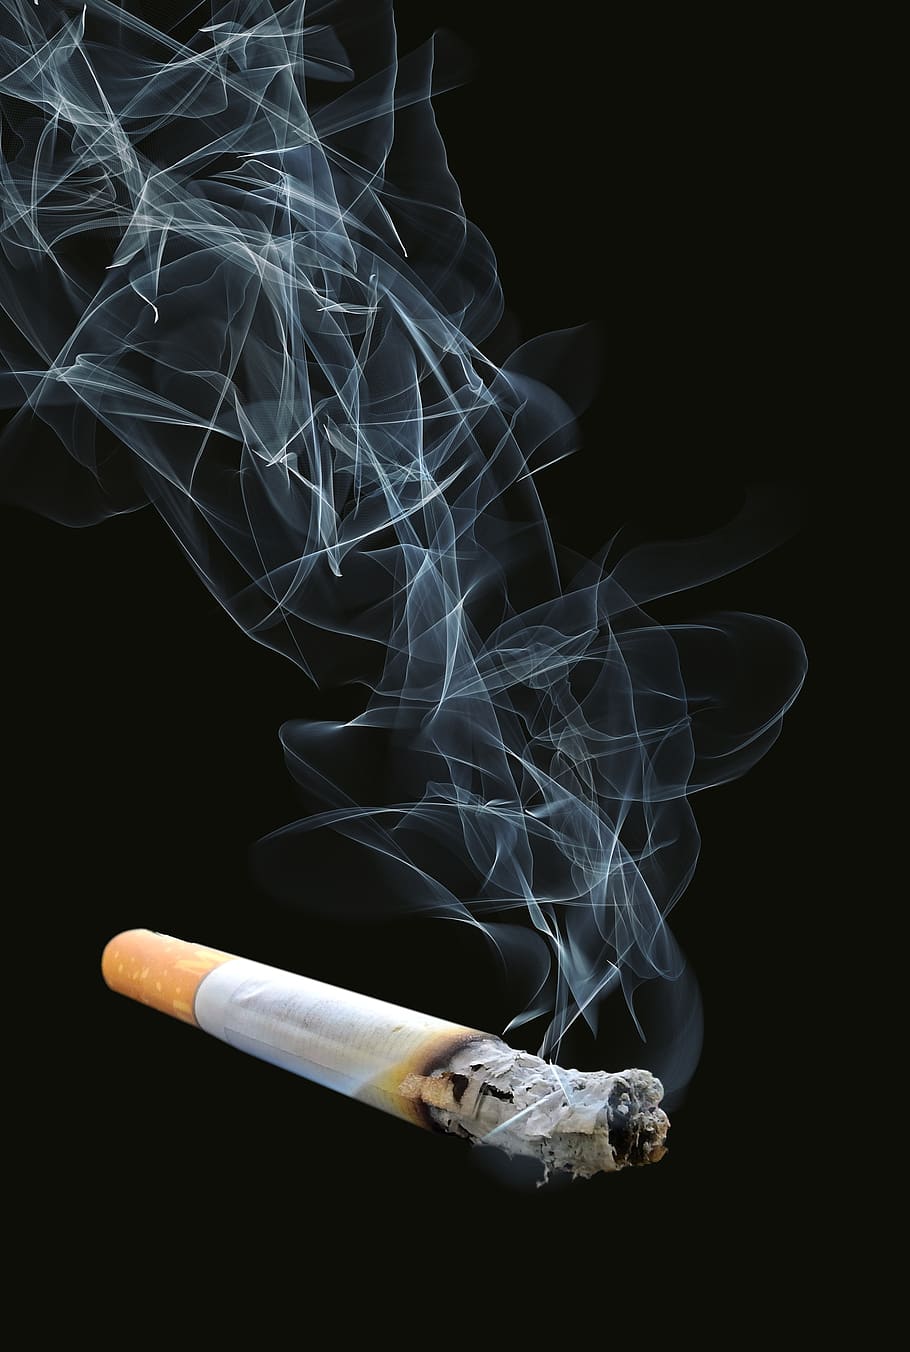 rokok, merokok, asap, abu, kecanduan, tidak sehat, merokok - struktur fisik, tanda peringatan, tanda, masalah merokok